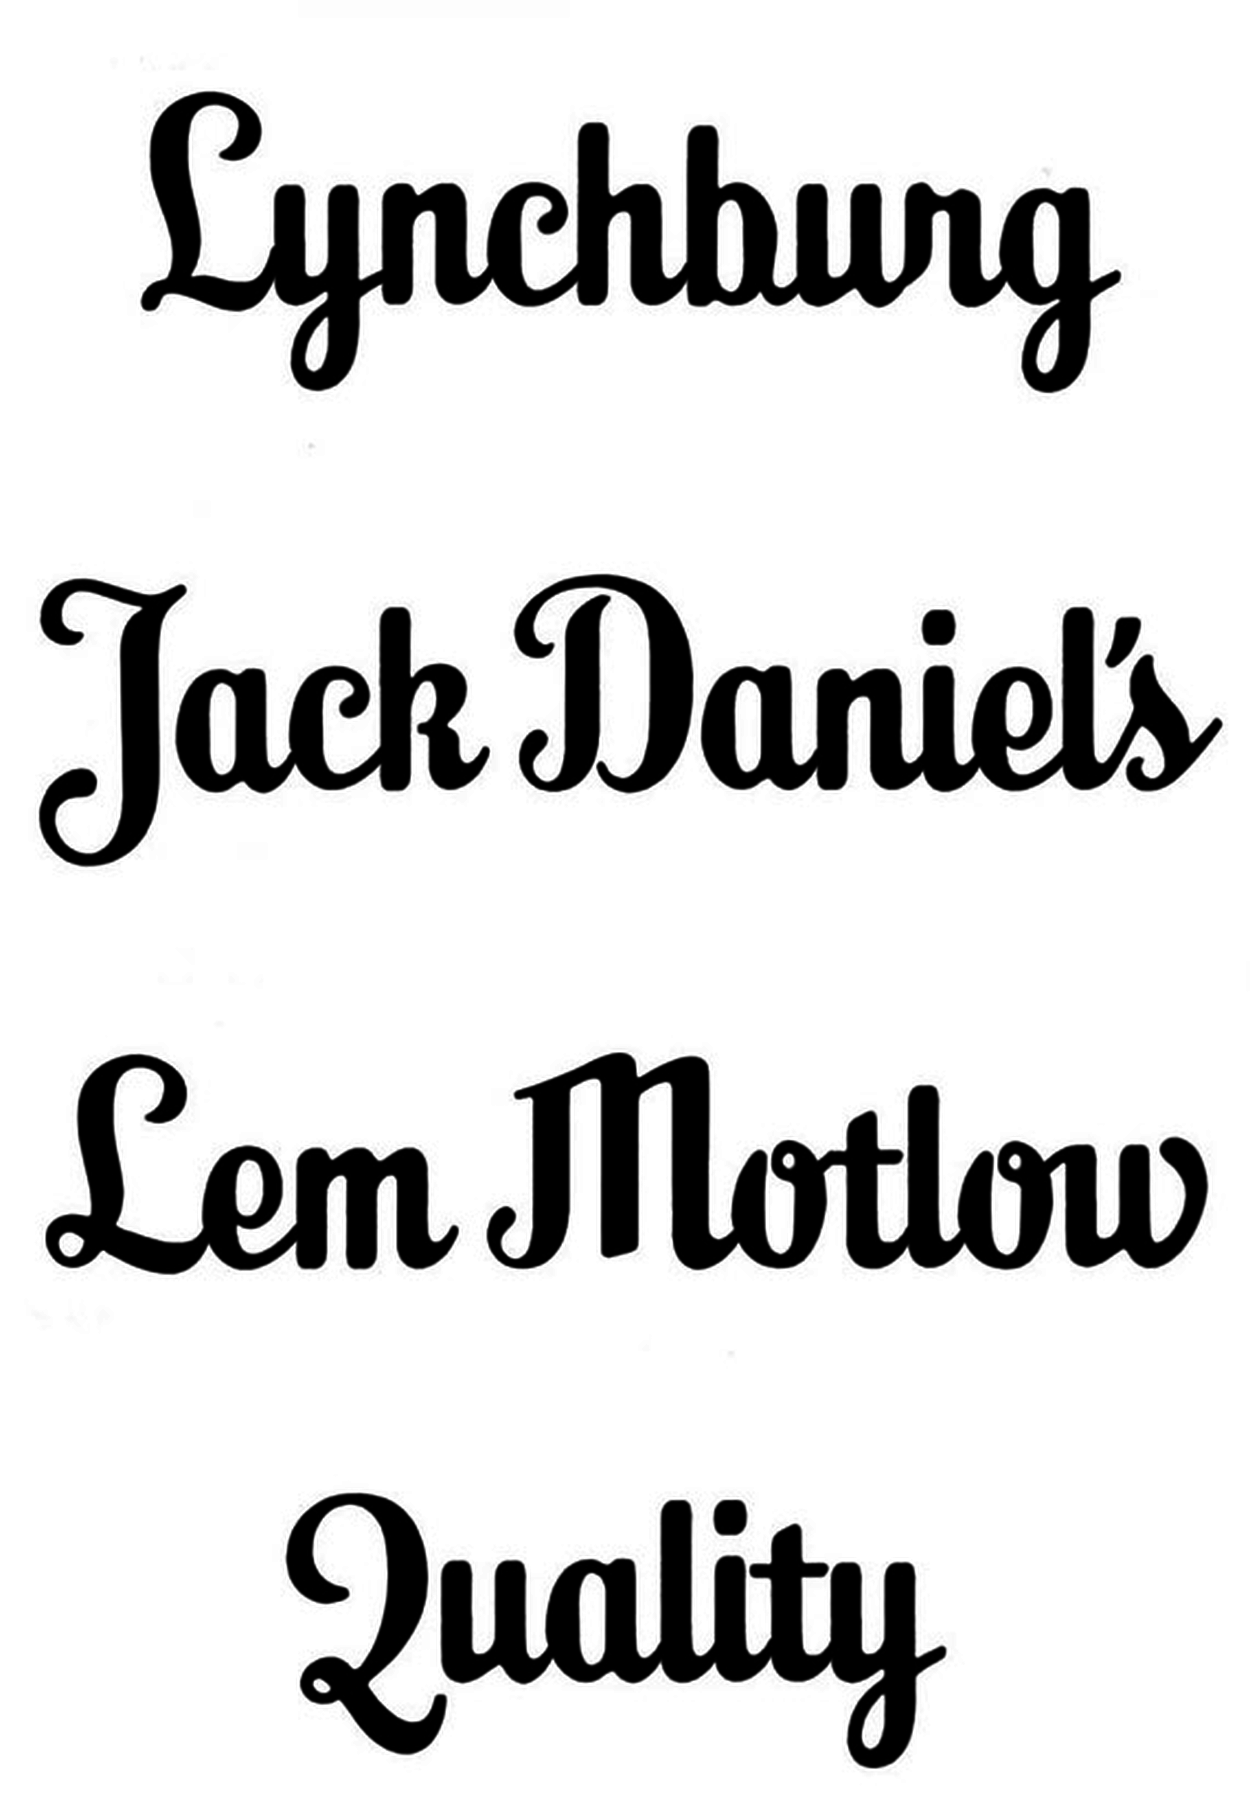 free jack daniels style font